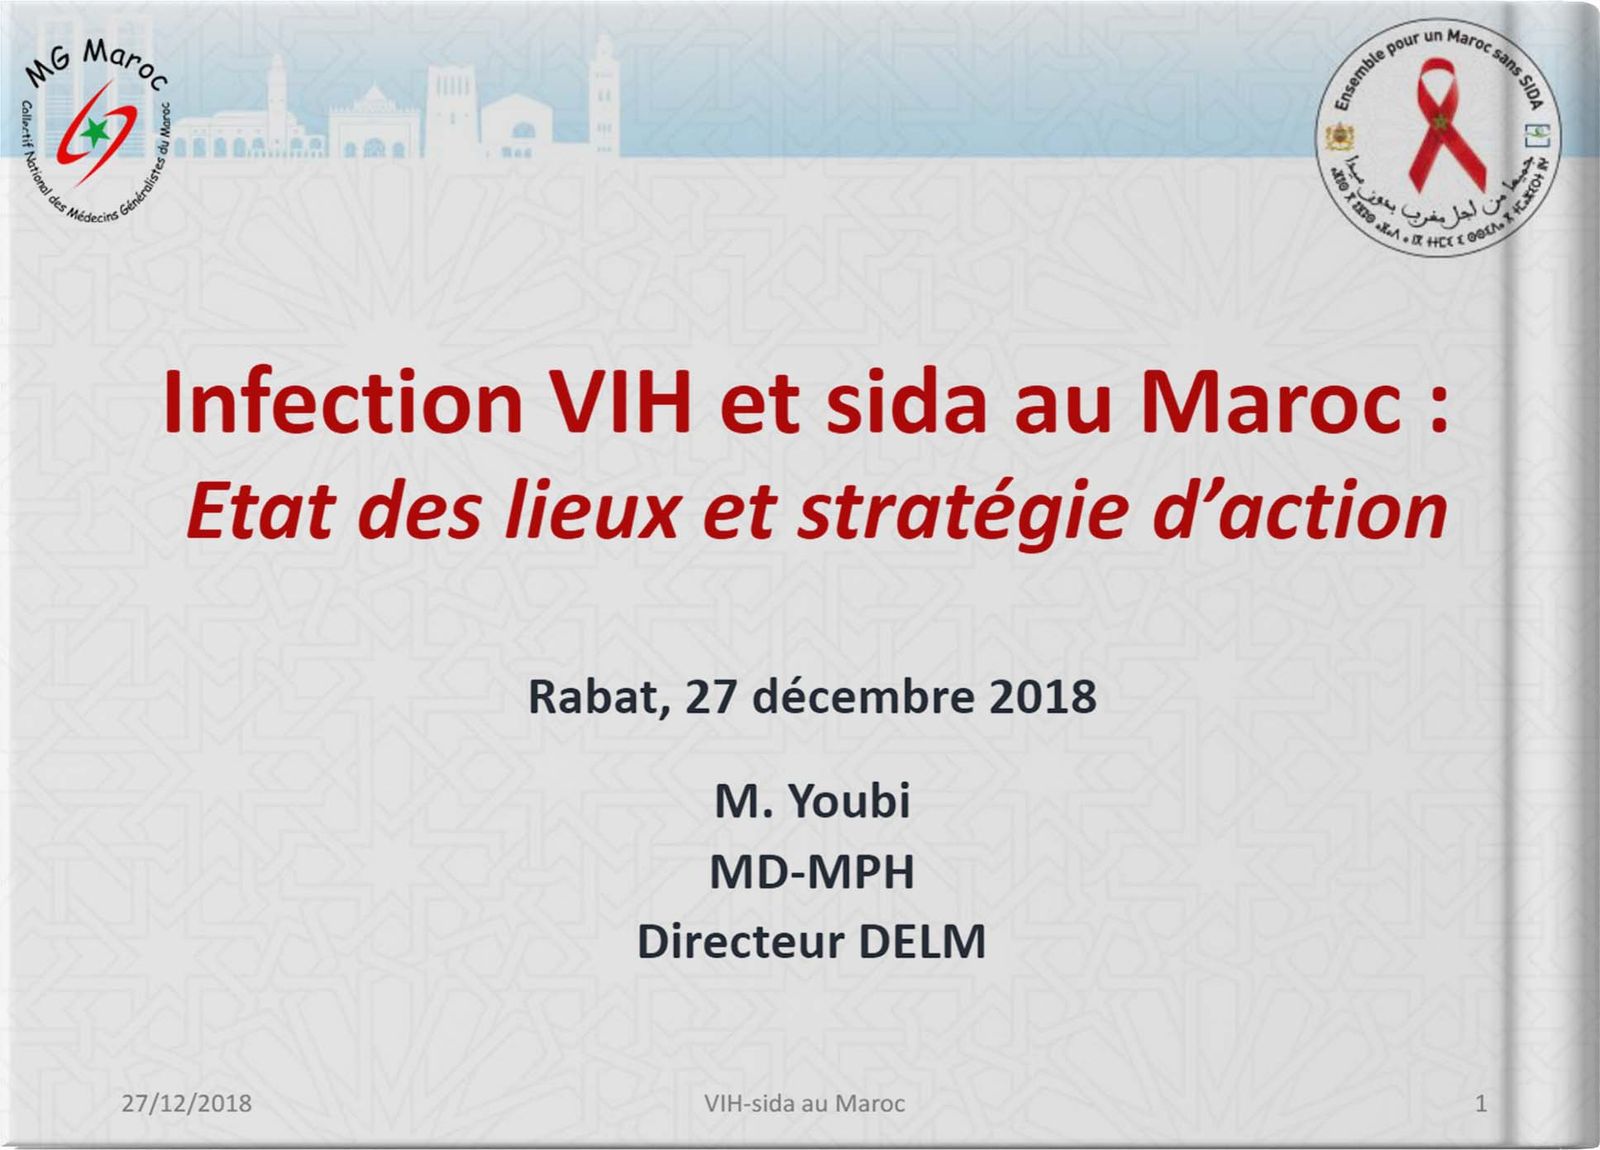 Infection VIH et sida au Maroc : Etat des lieux et stratégie d’action